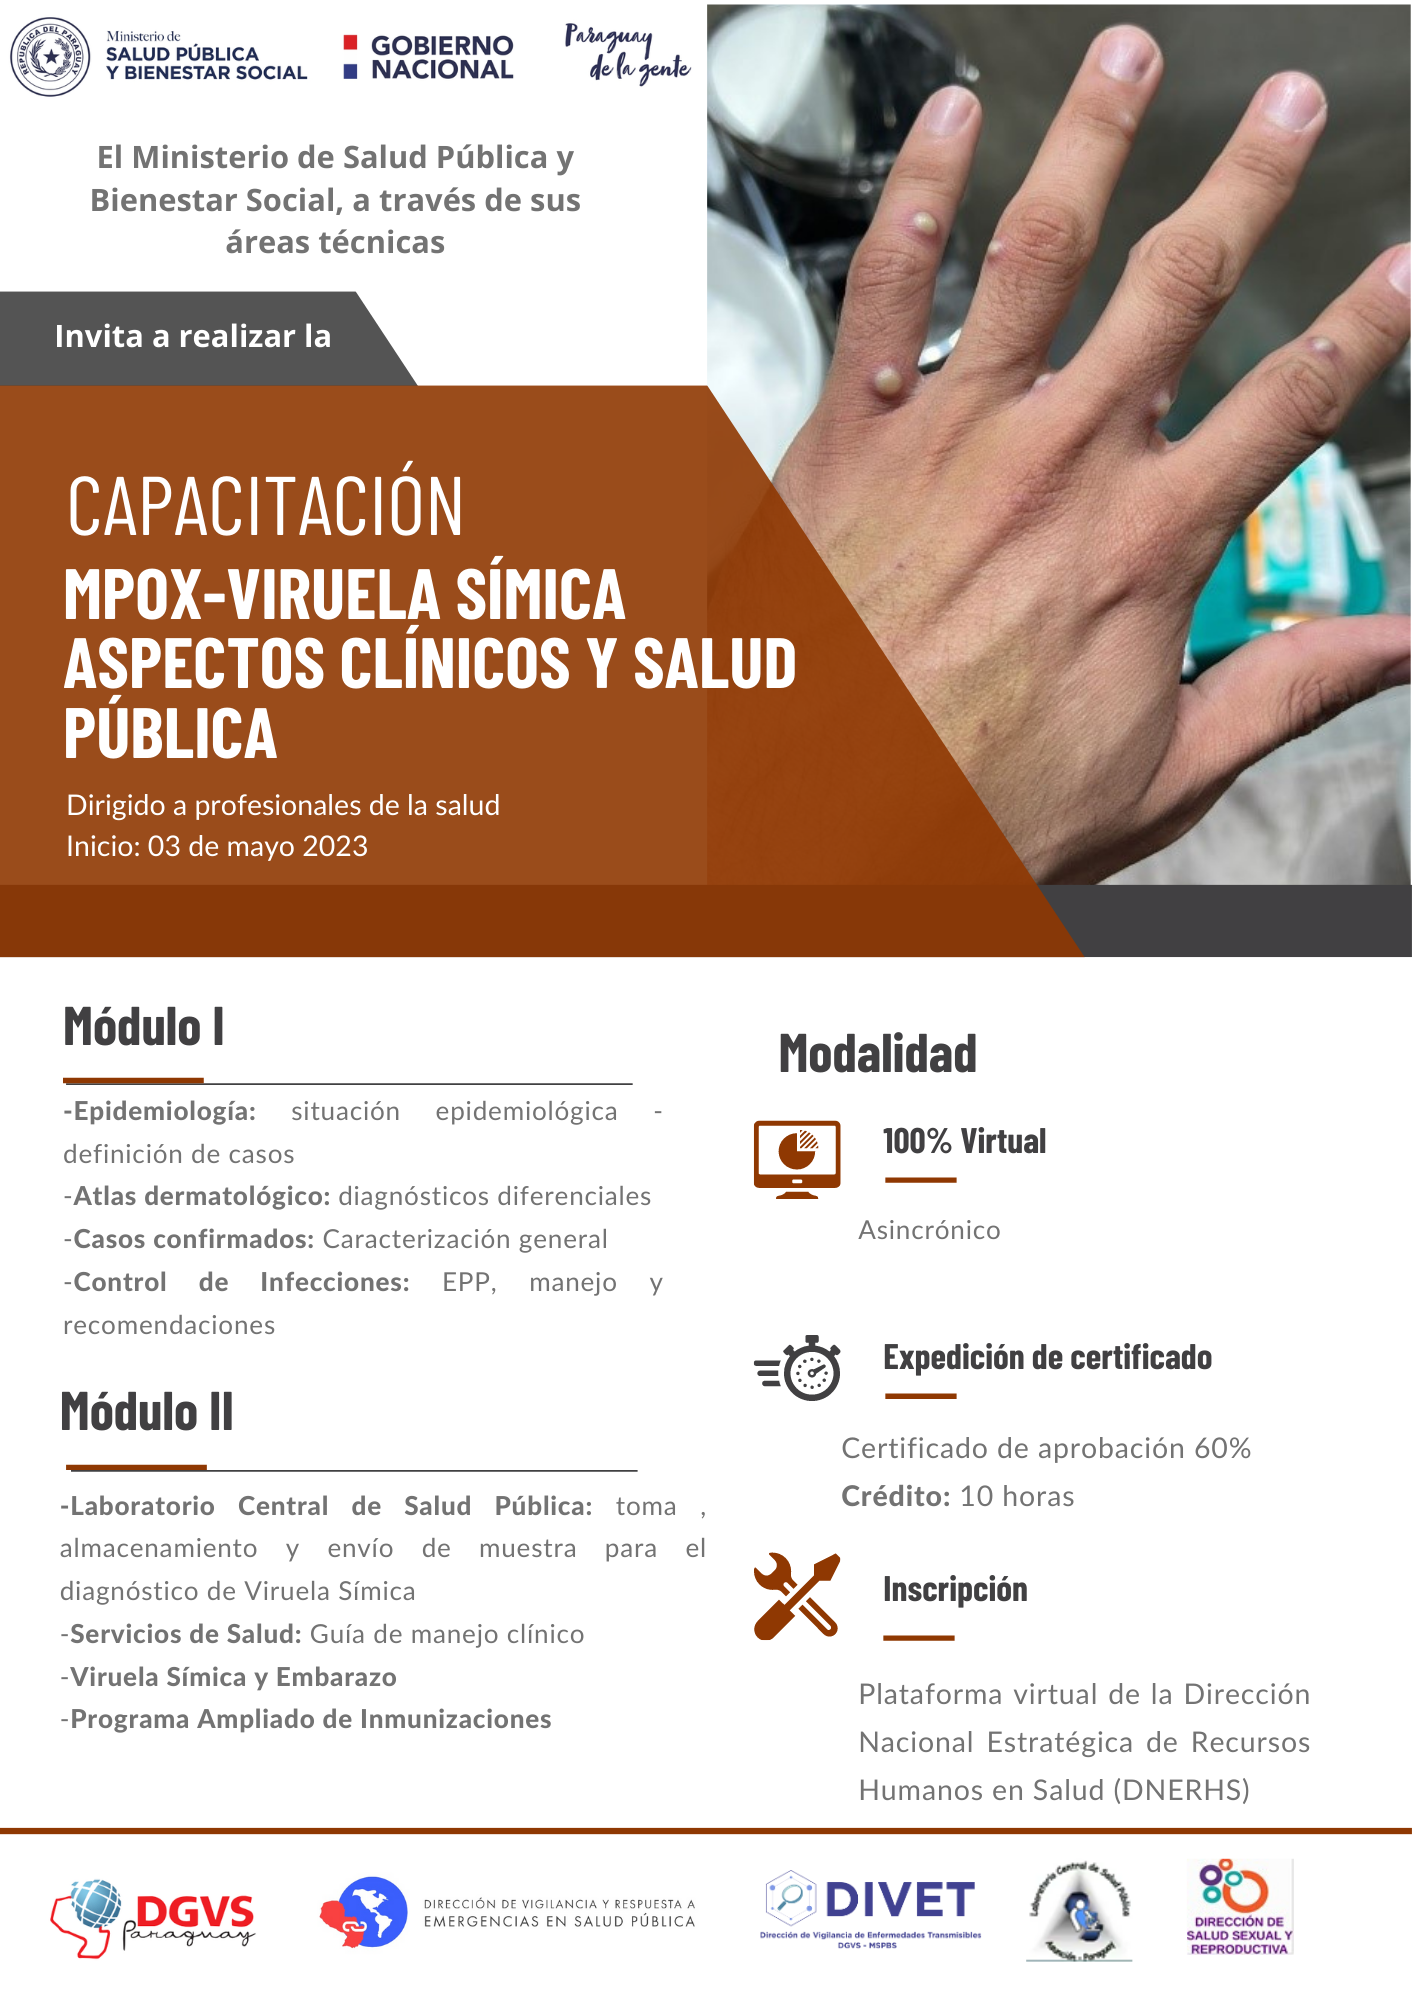 Inicia curso de capacitación virtual y gratuita en MPOX-Viruela Símica